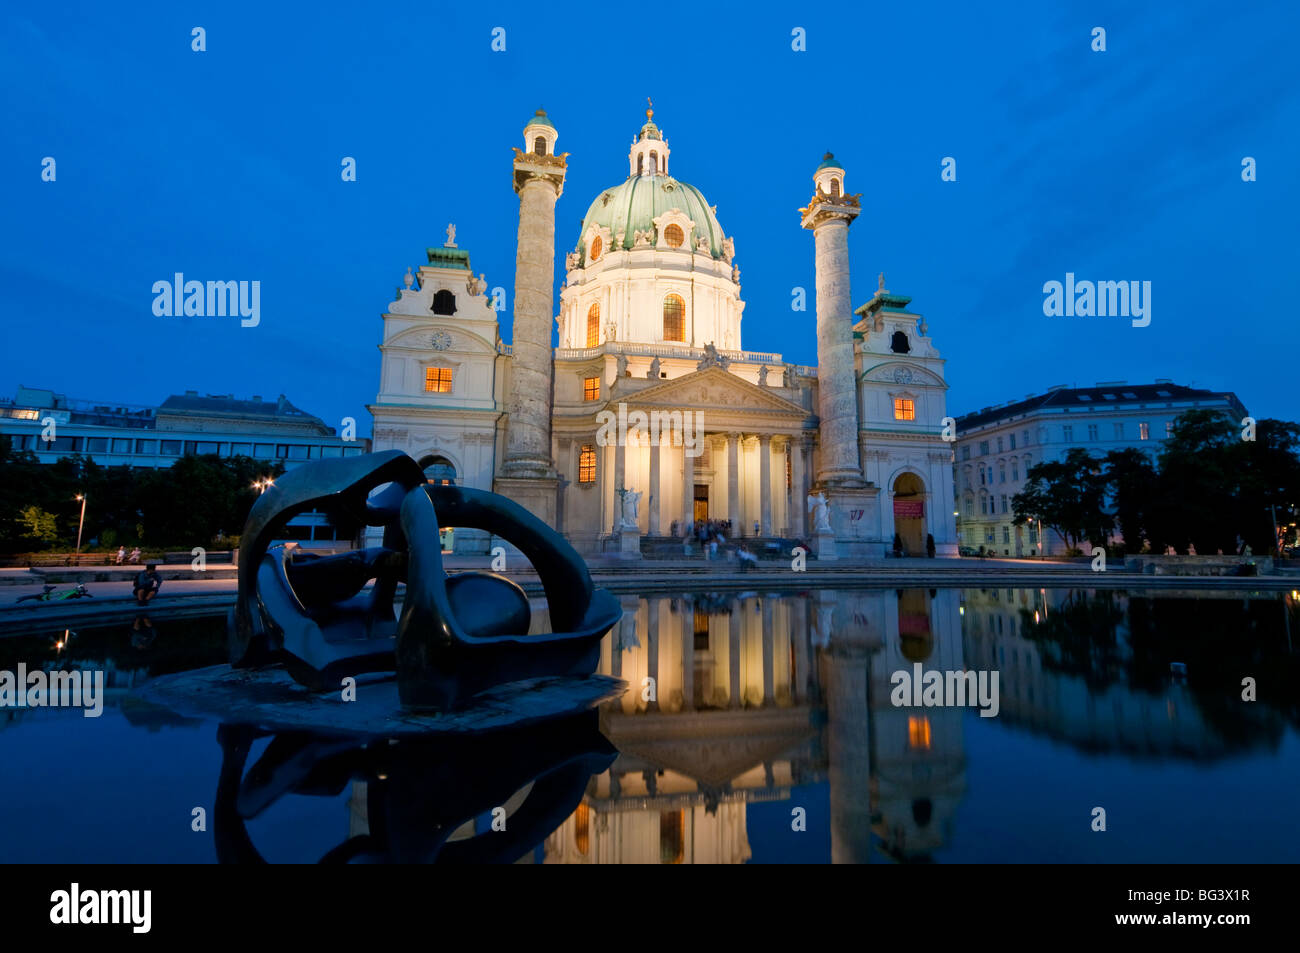 Karlskirche bei nacht, Wien, Österreich | Karlskirche (église) la nuit, Vienne, Autriche Banque D'Images